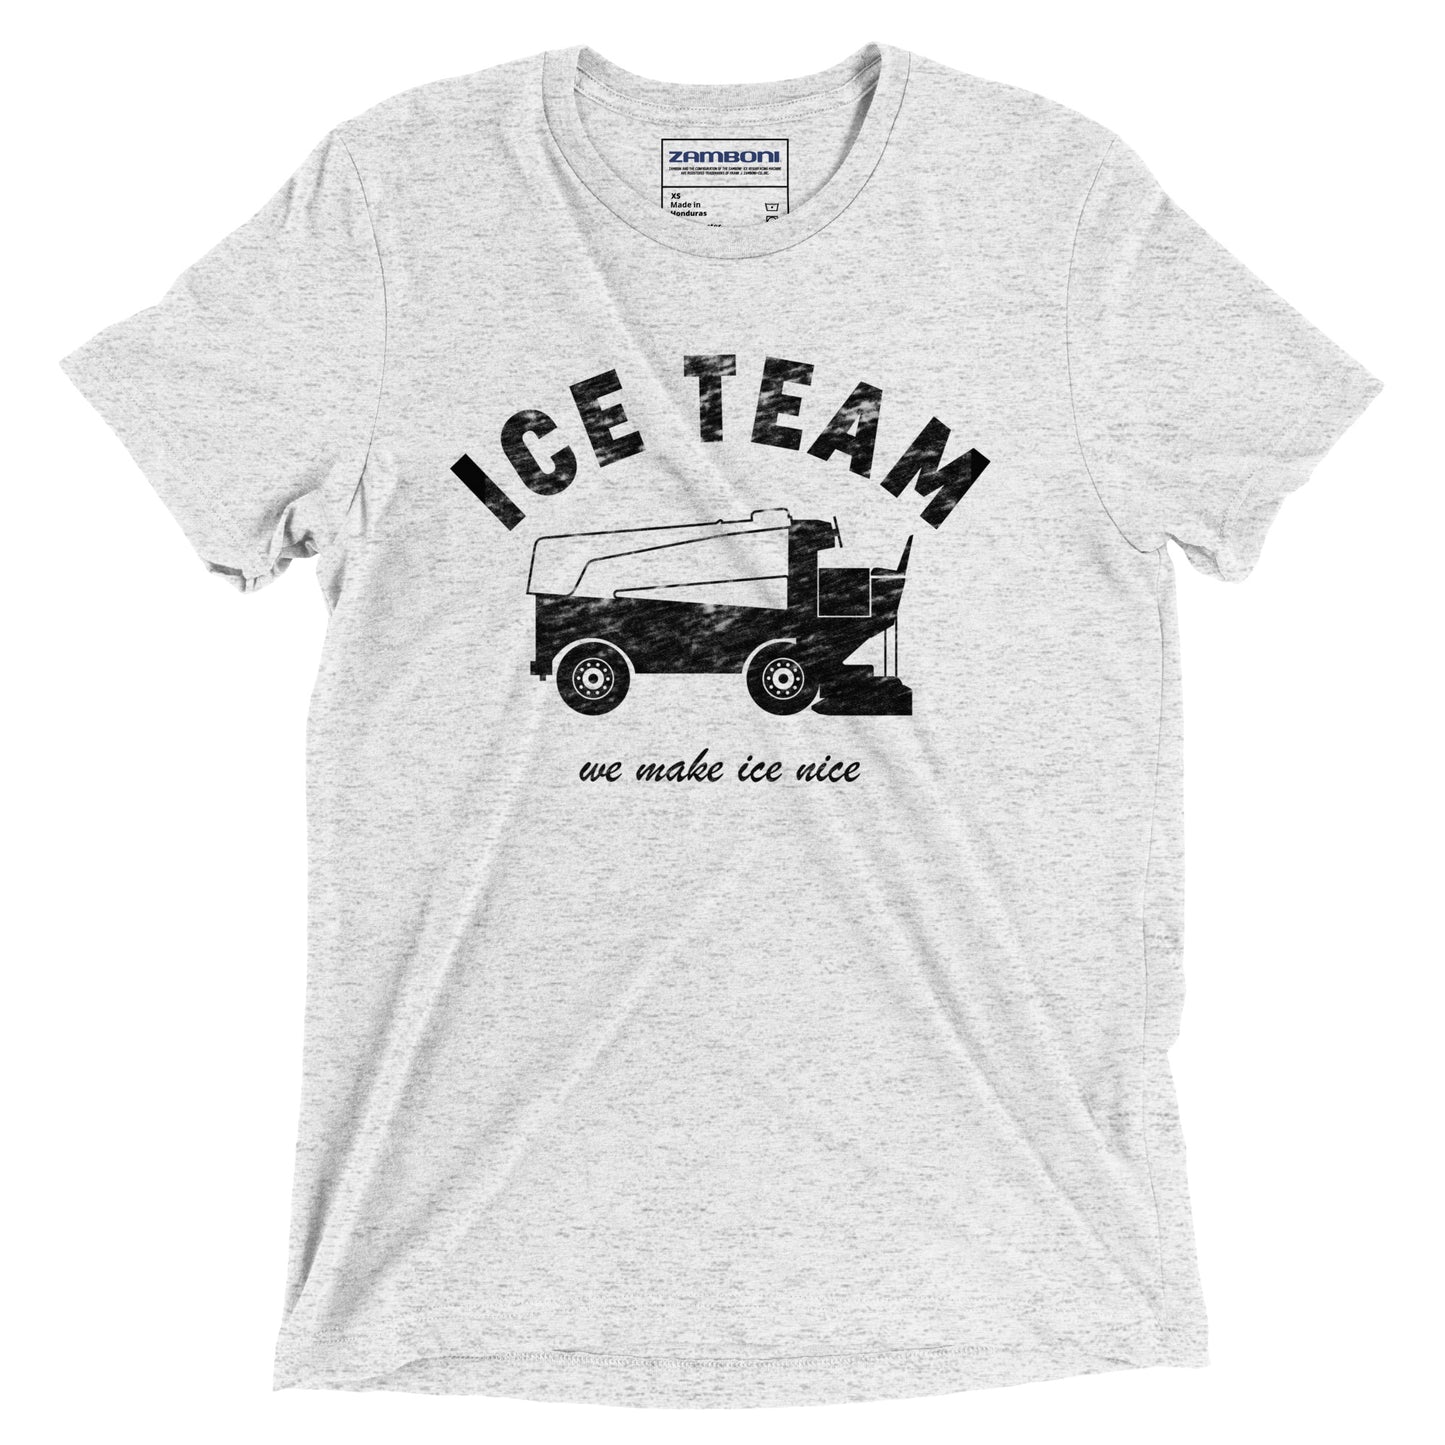 Ice Team Tri-Blend Tee